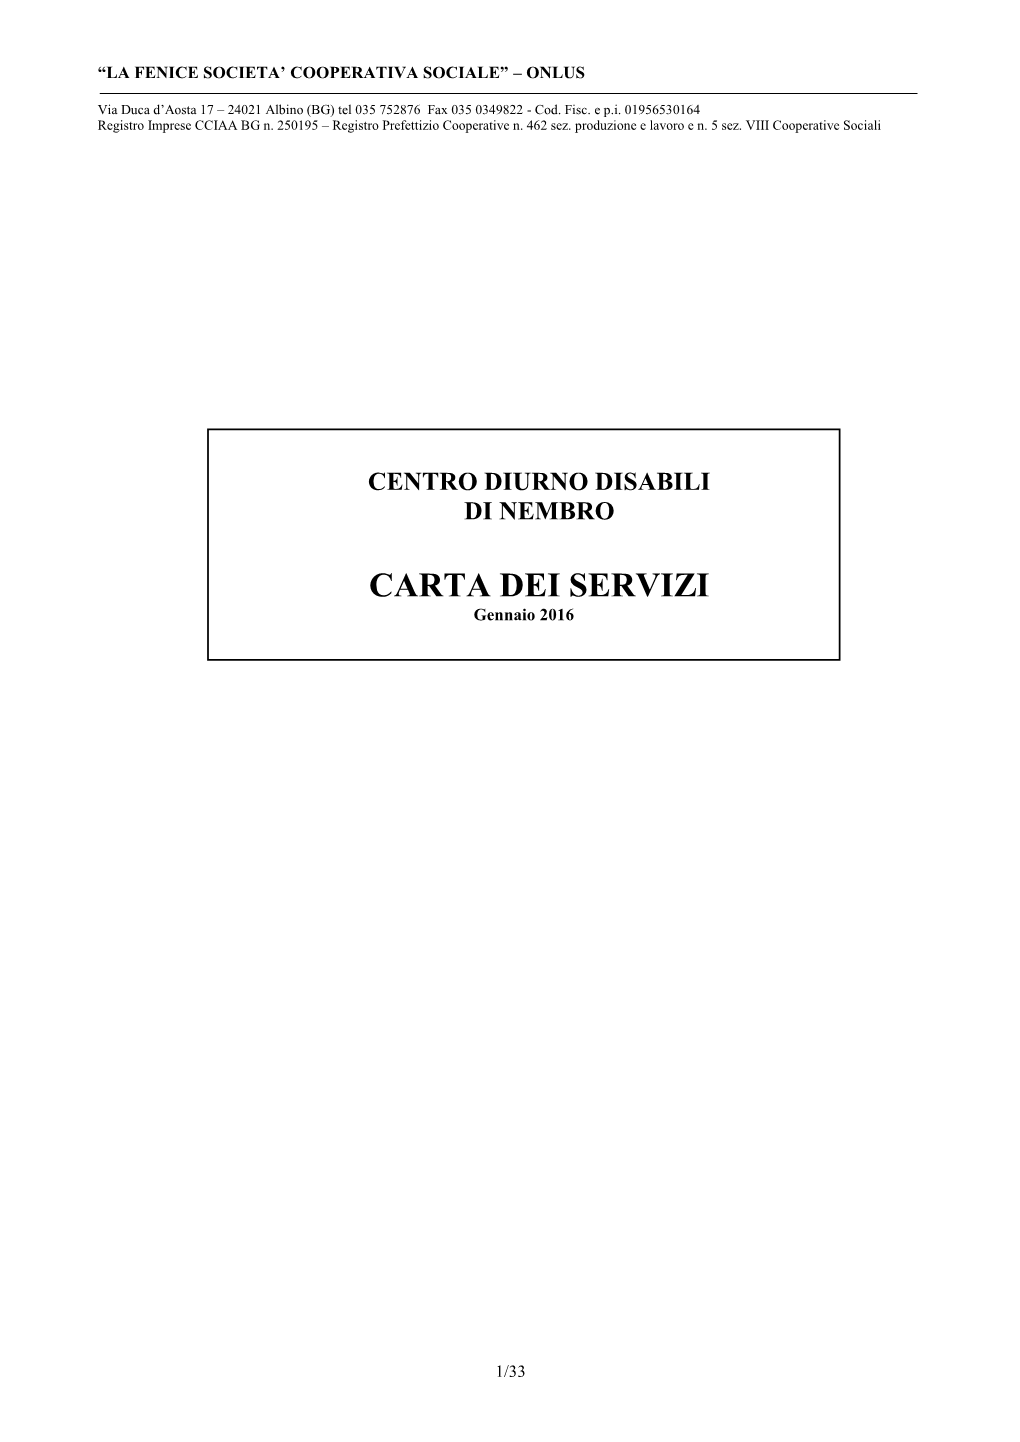 Carta-Servizi-CDD-Nembro-2016.Pdf